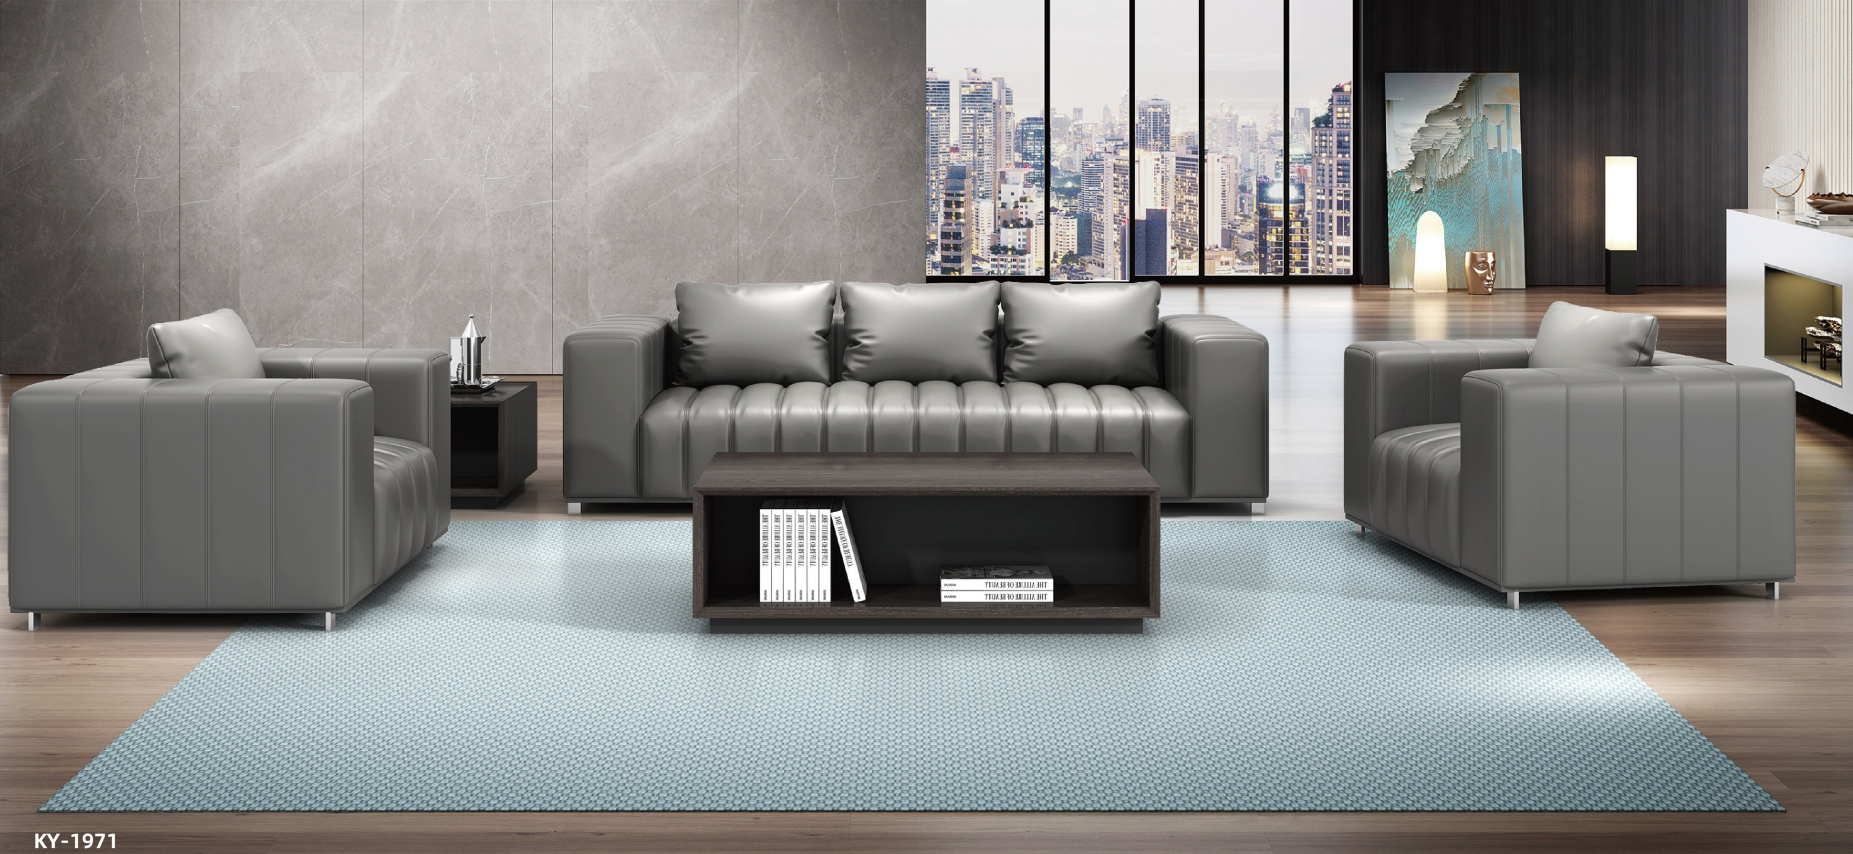 Grey big sofa sets for boss room 